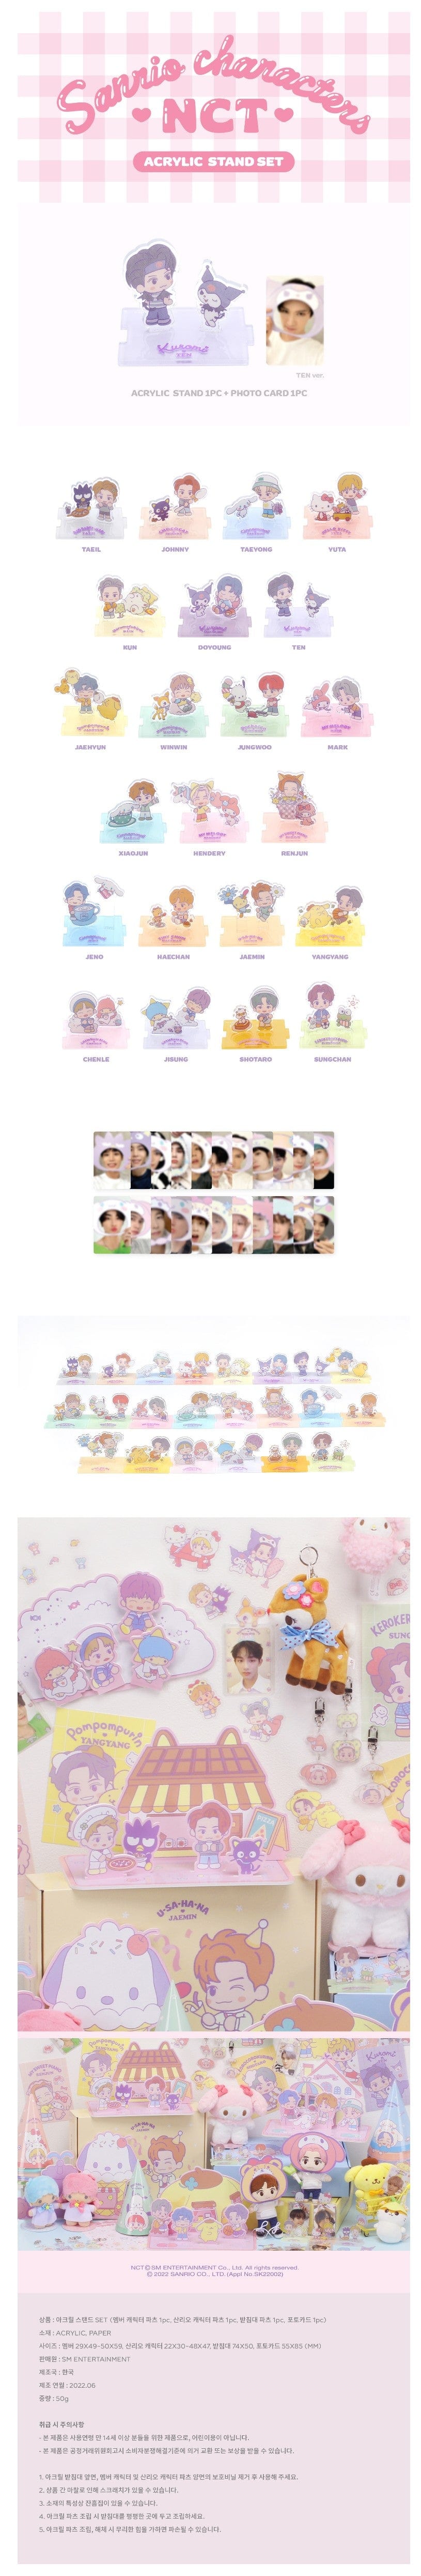 Korea Pop Store [NCT x SANRIO] Acrylic Stand Set Kawaii Gifts